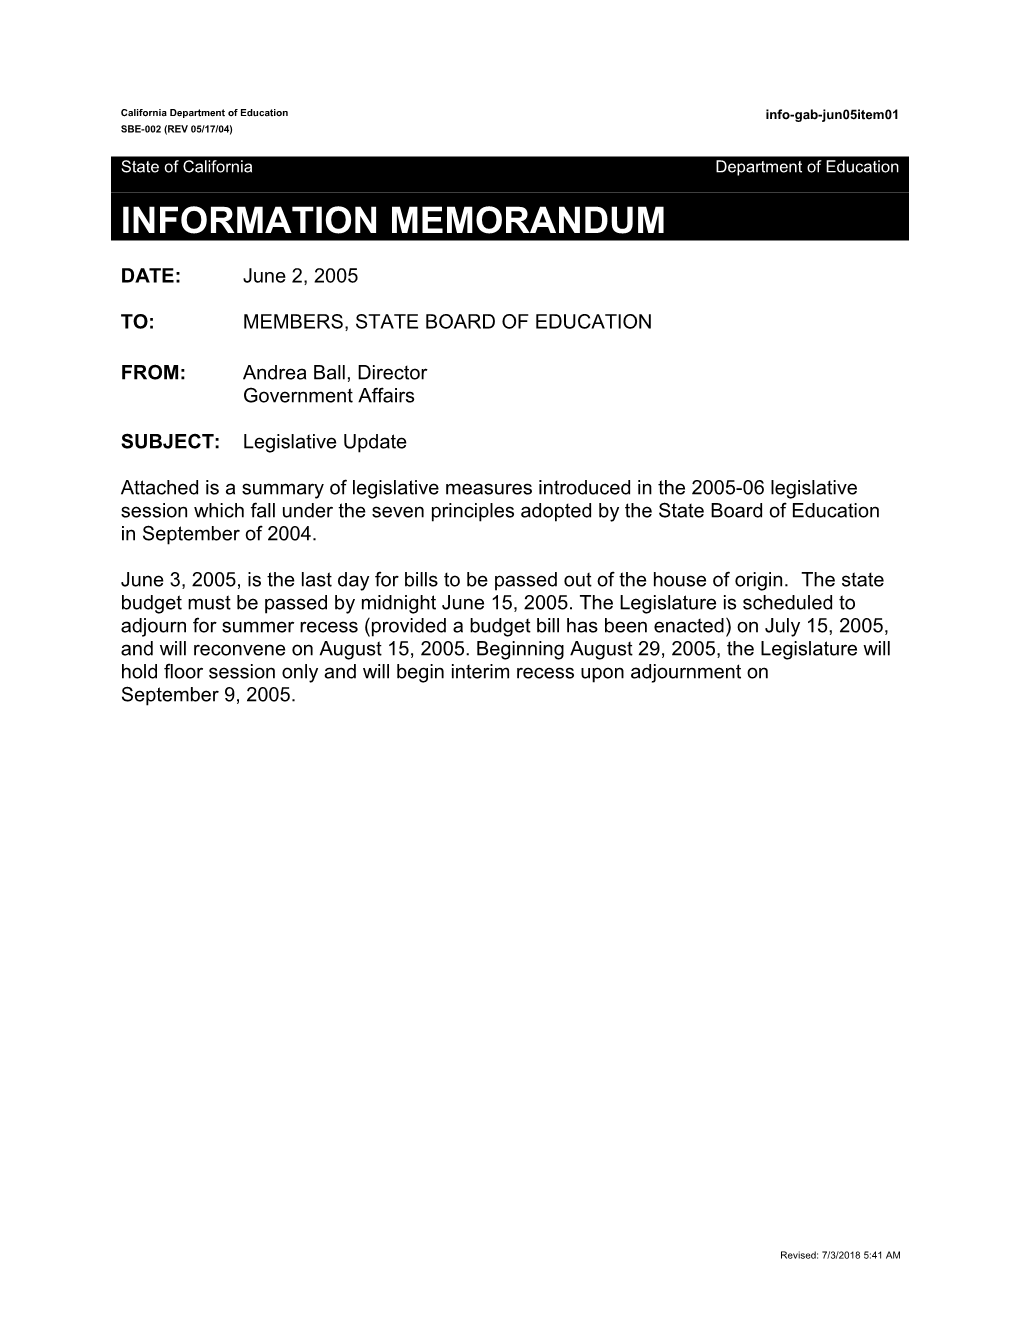 June 2005 GAB Item 1 - Information Memorandum (CA State Board of Education)